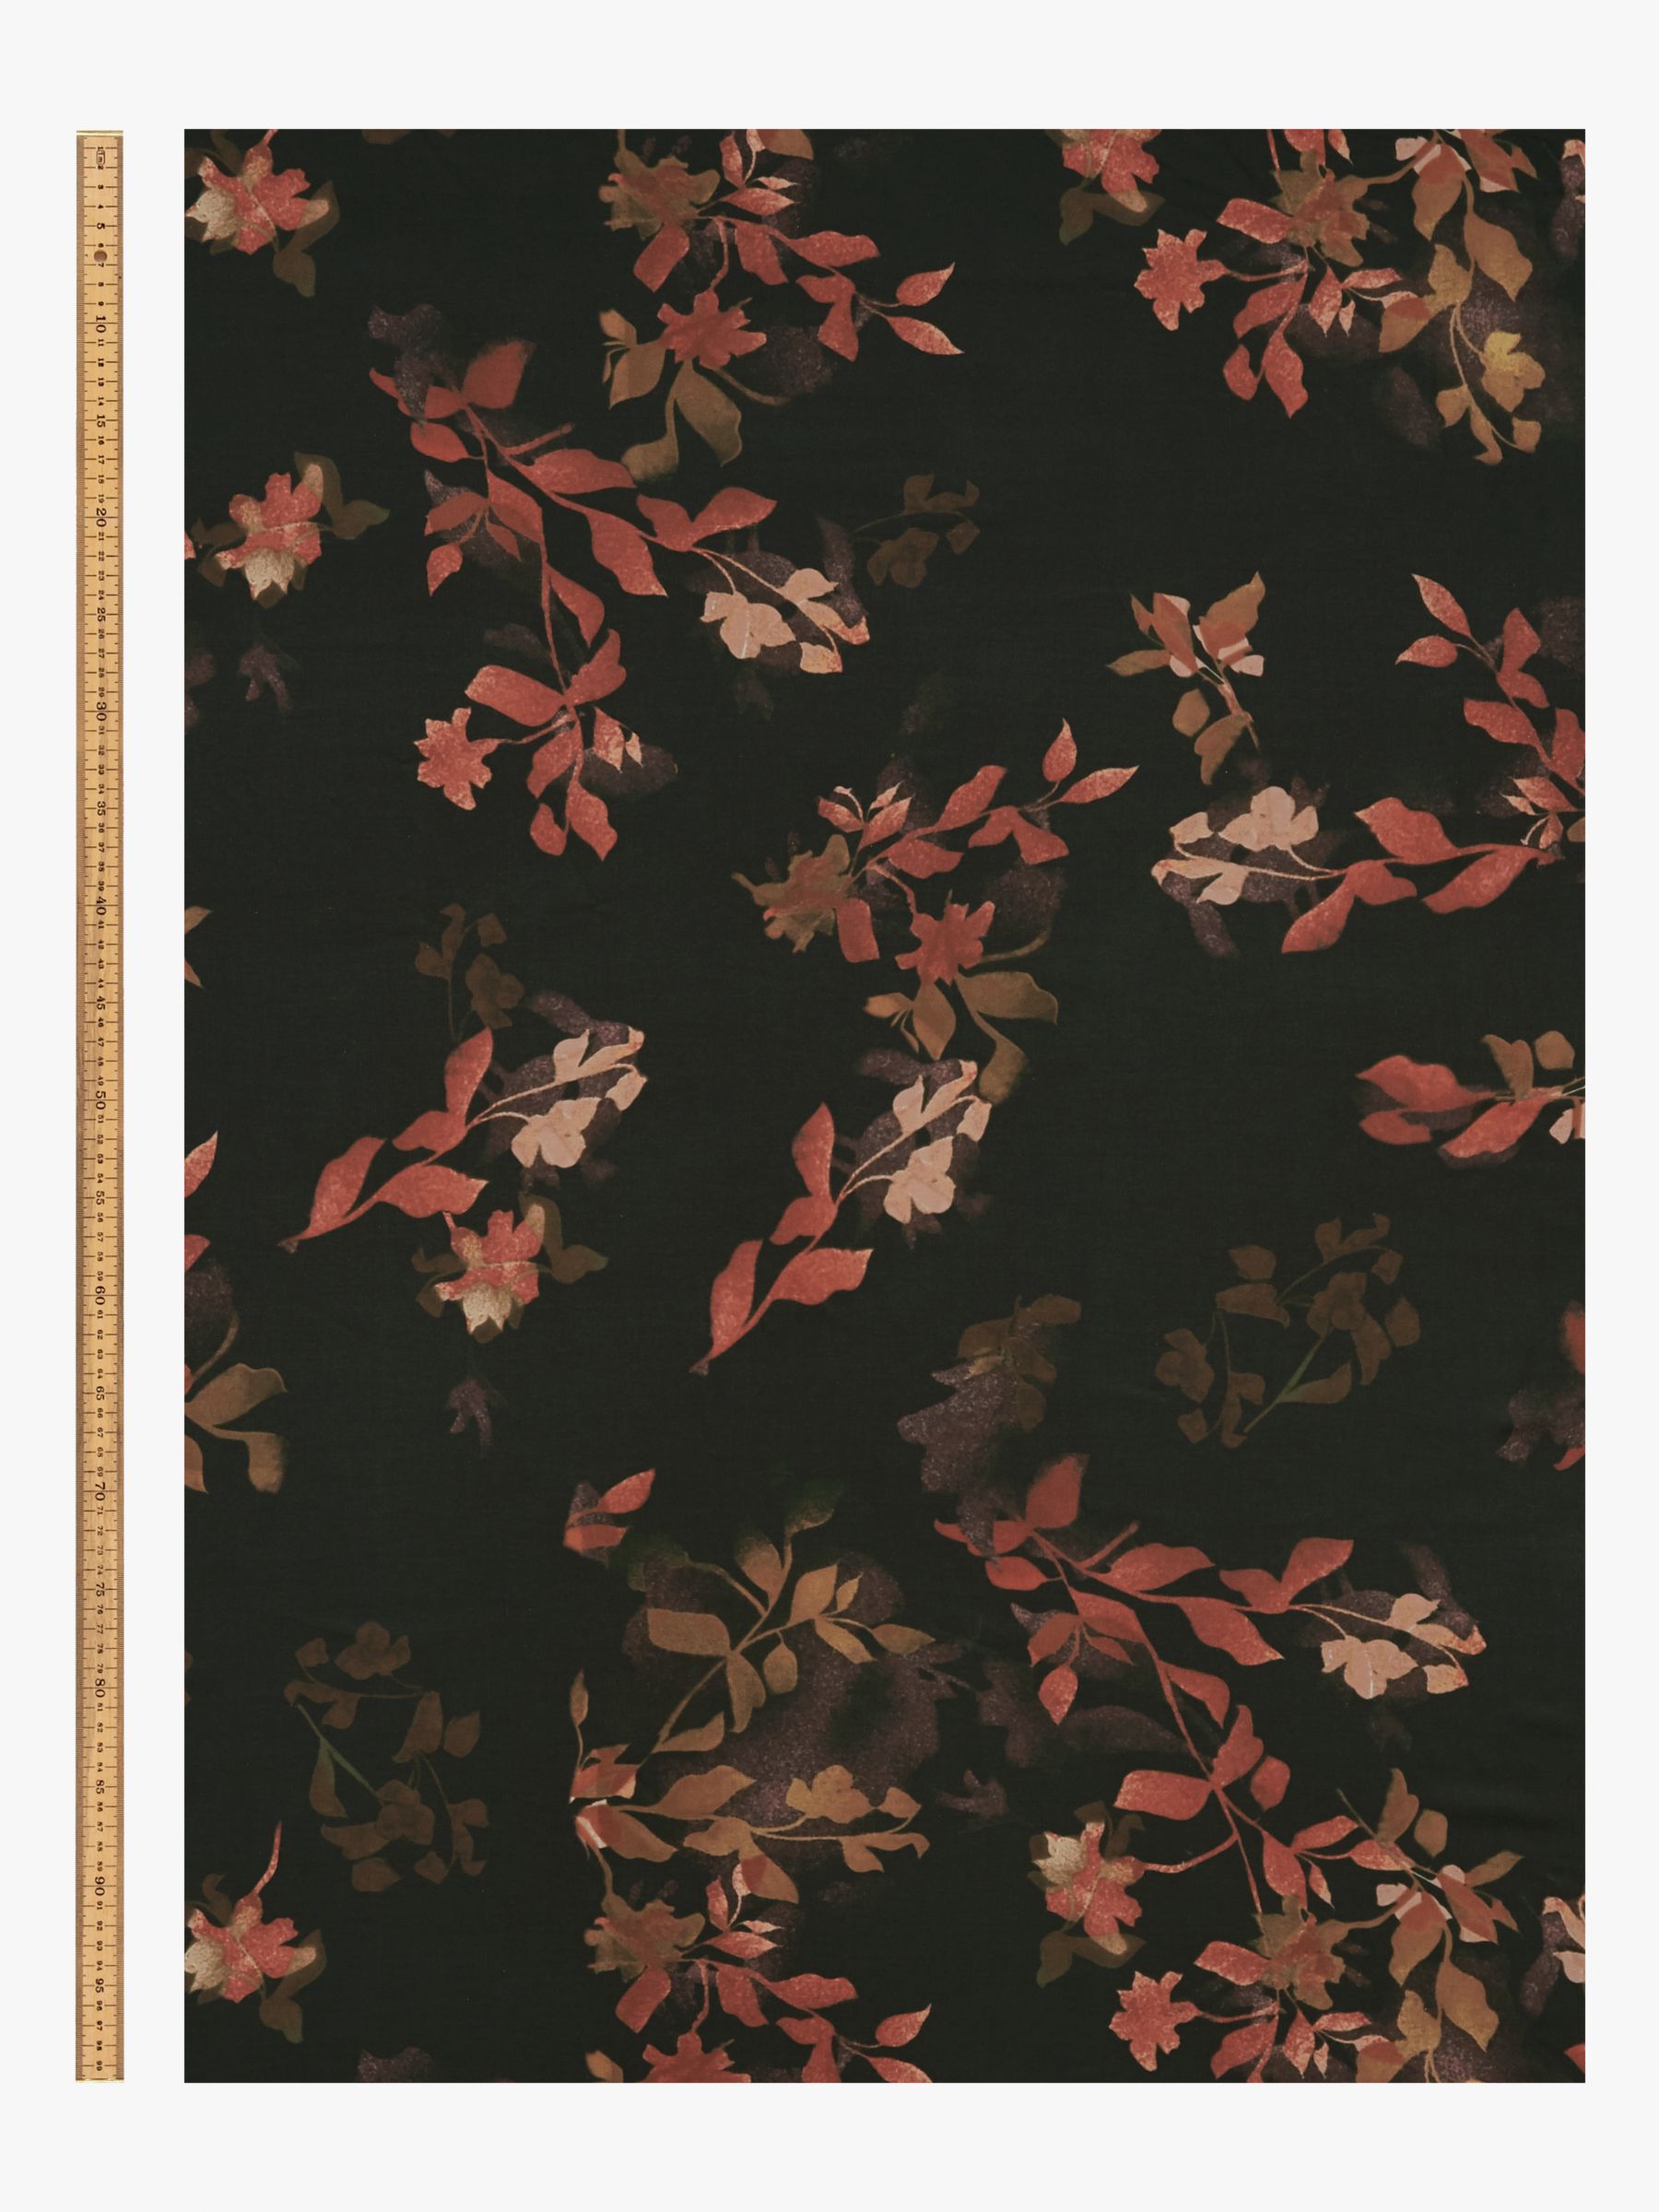 John Kaldor Leaf Floral Print Fabric, Black